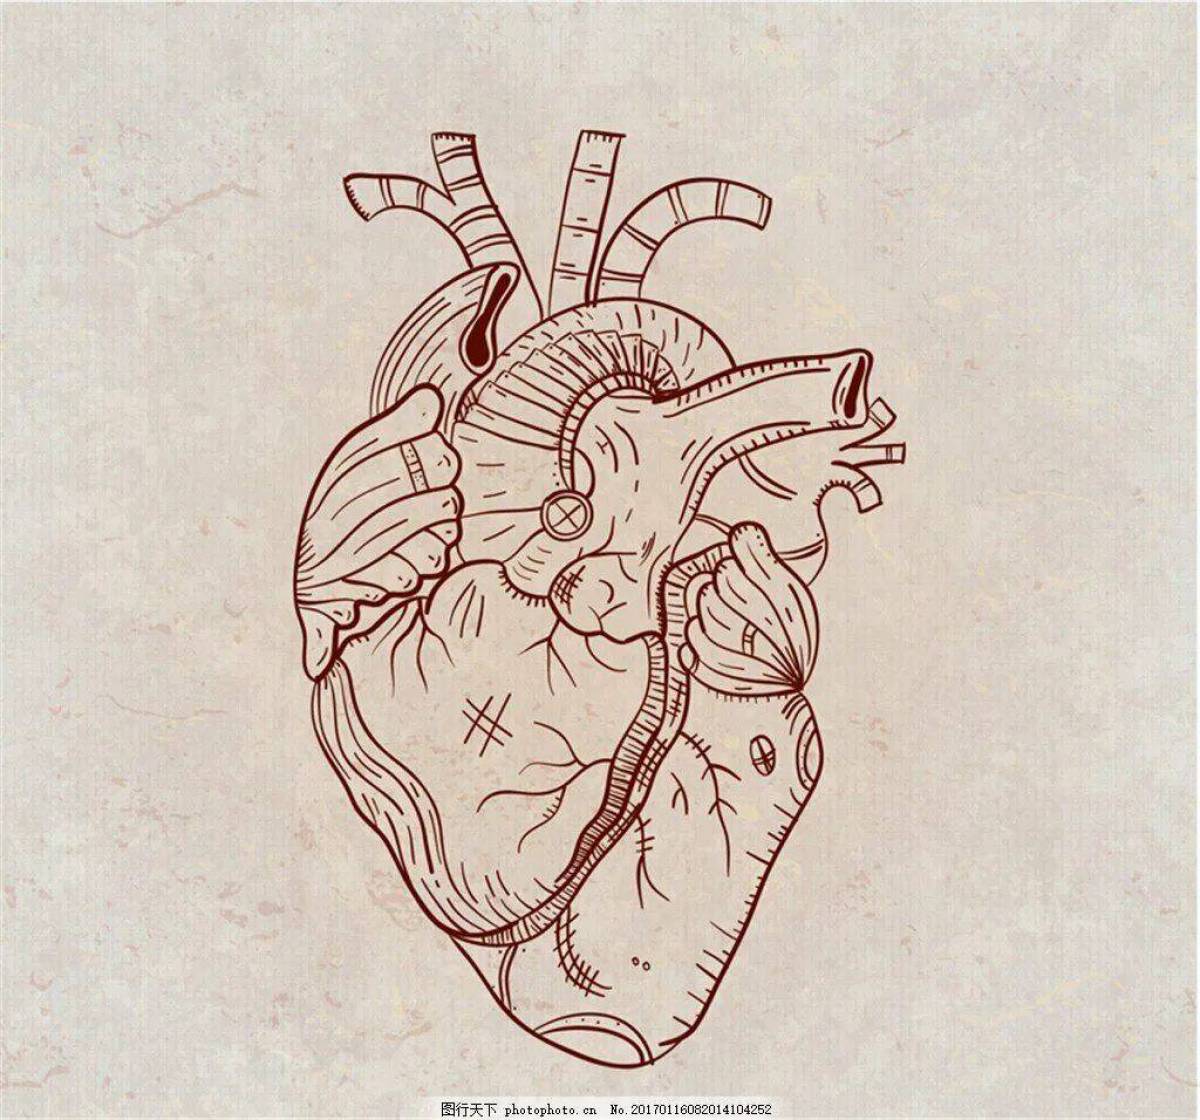 Сердце анатомическое #29